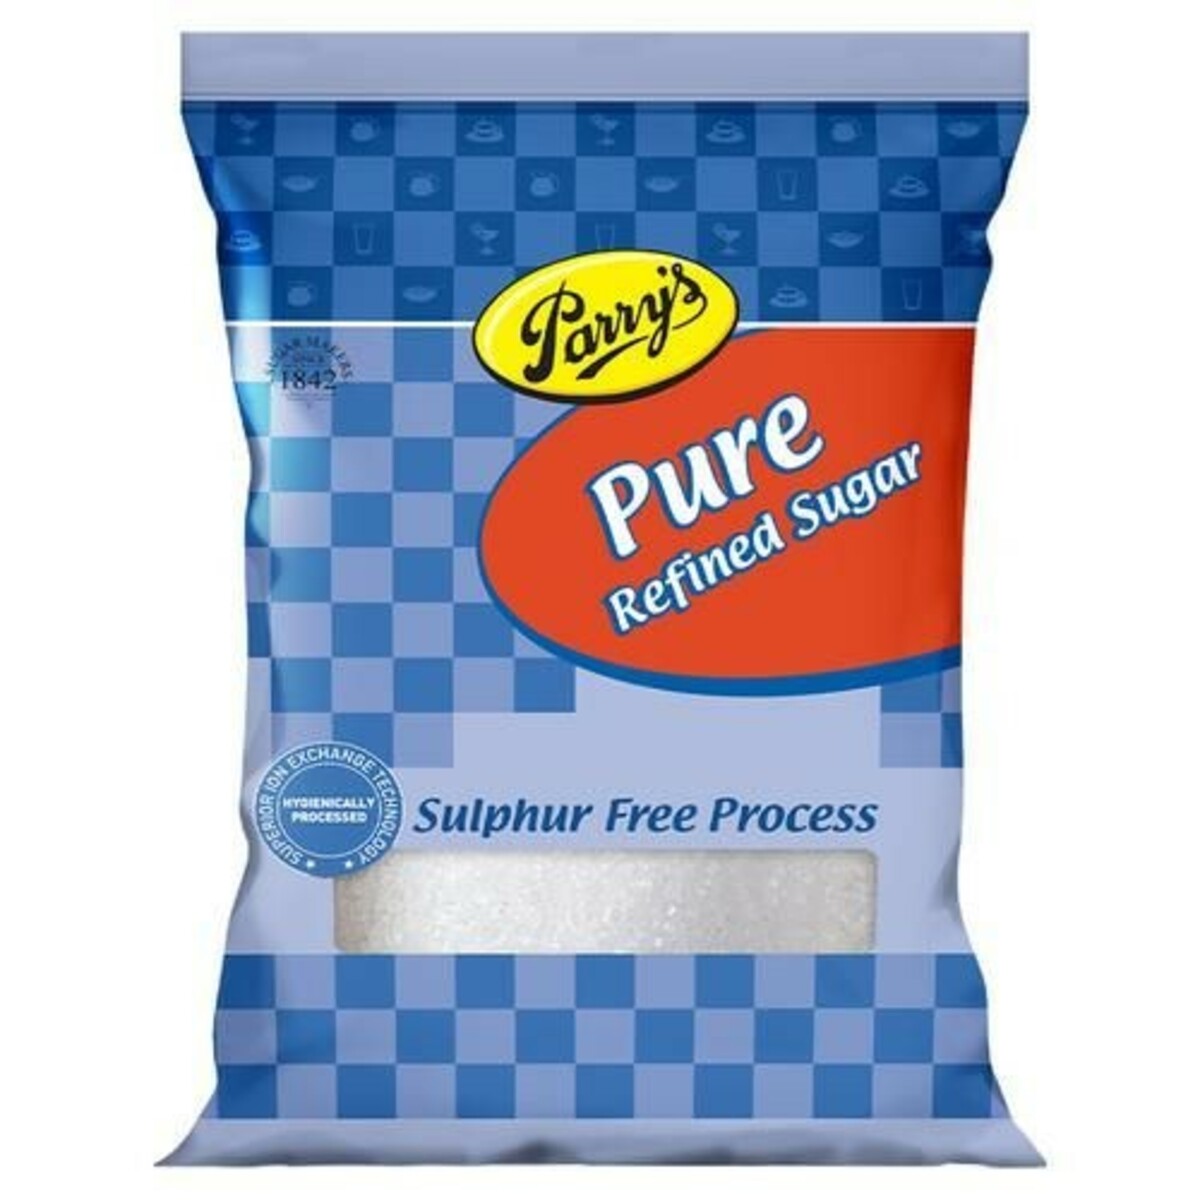 Parry's Pure Refined Sugar Pouch 5kg